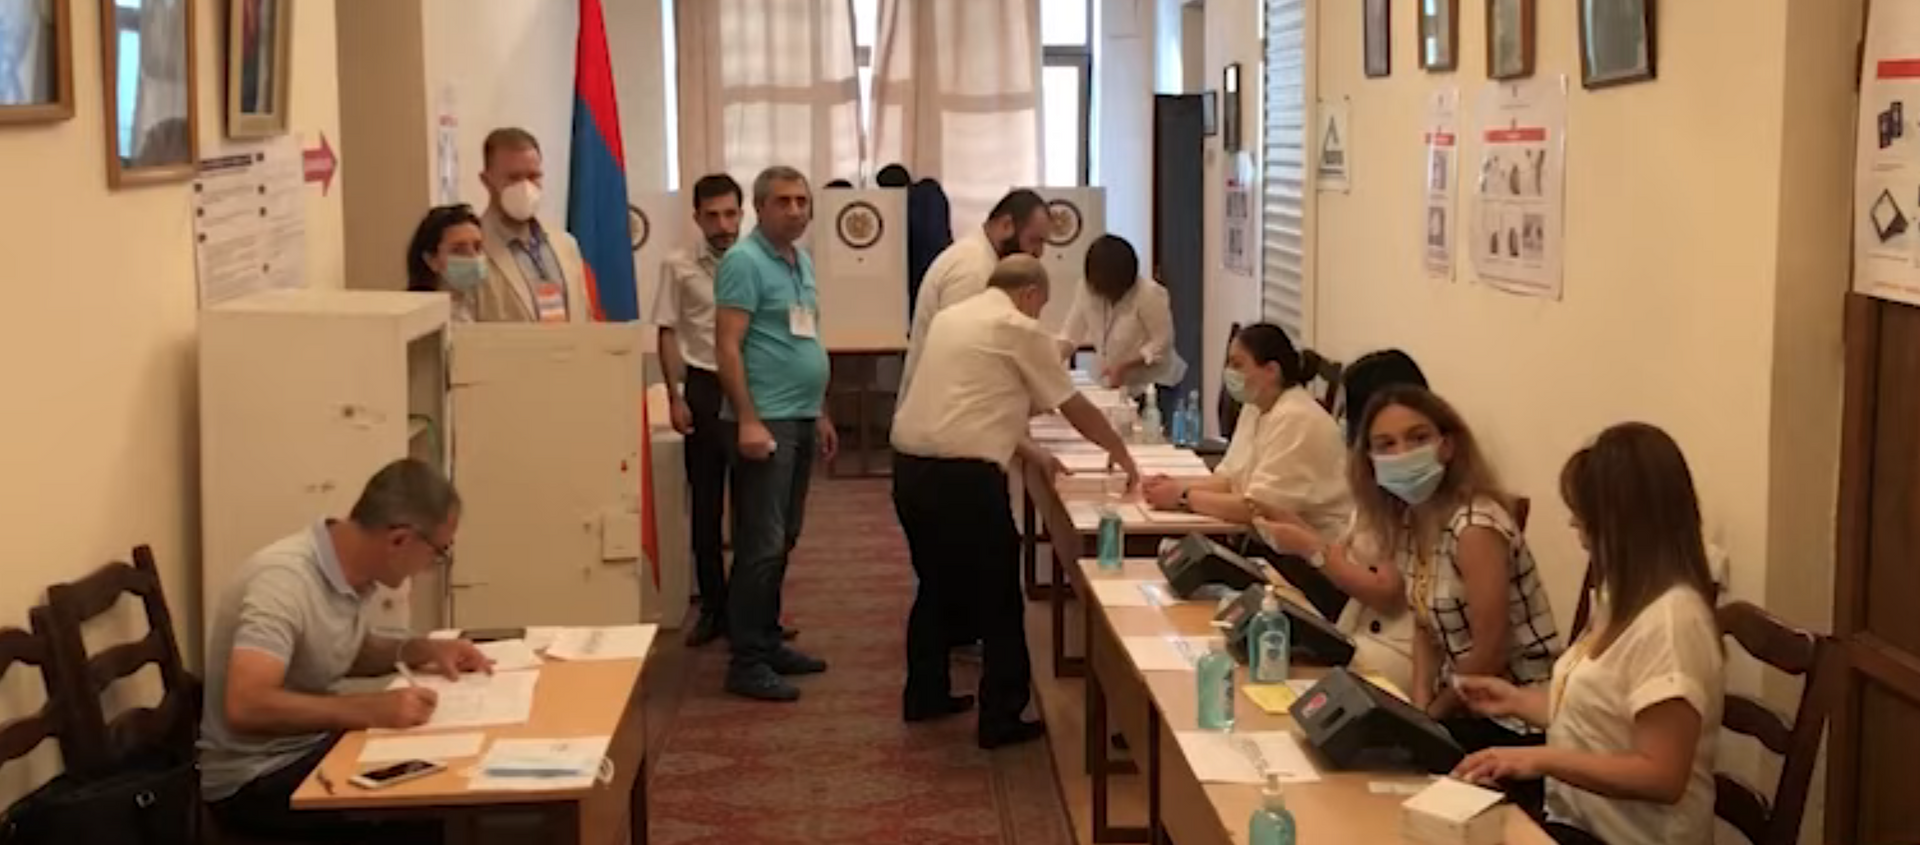 Как проходили выборы в парламент Армении - Sputnik Грузия, 1920, 20.06.2021